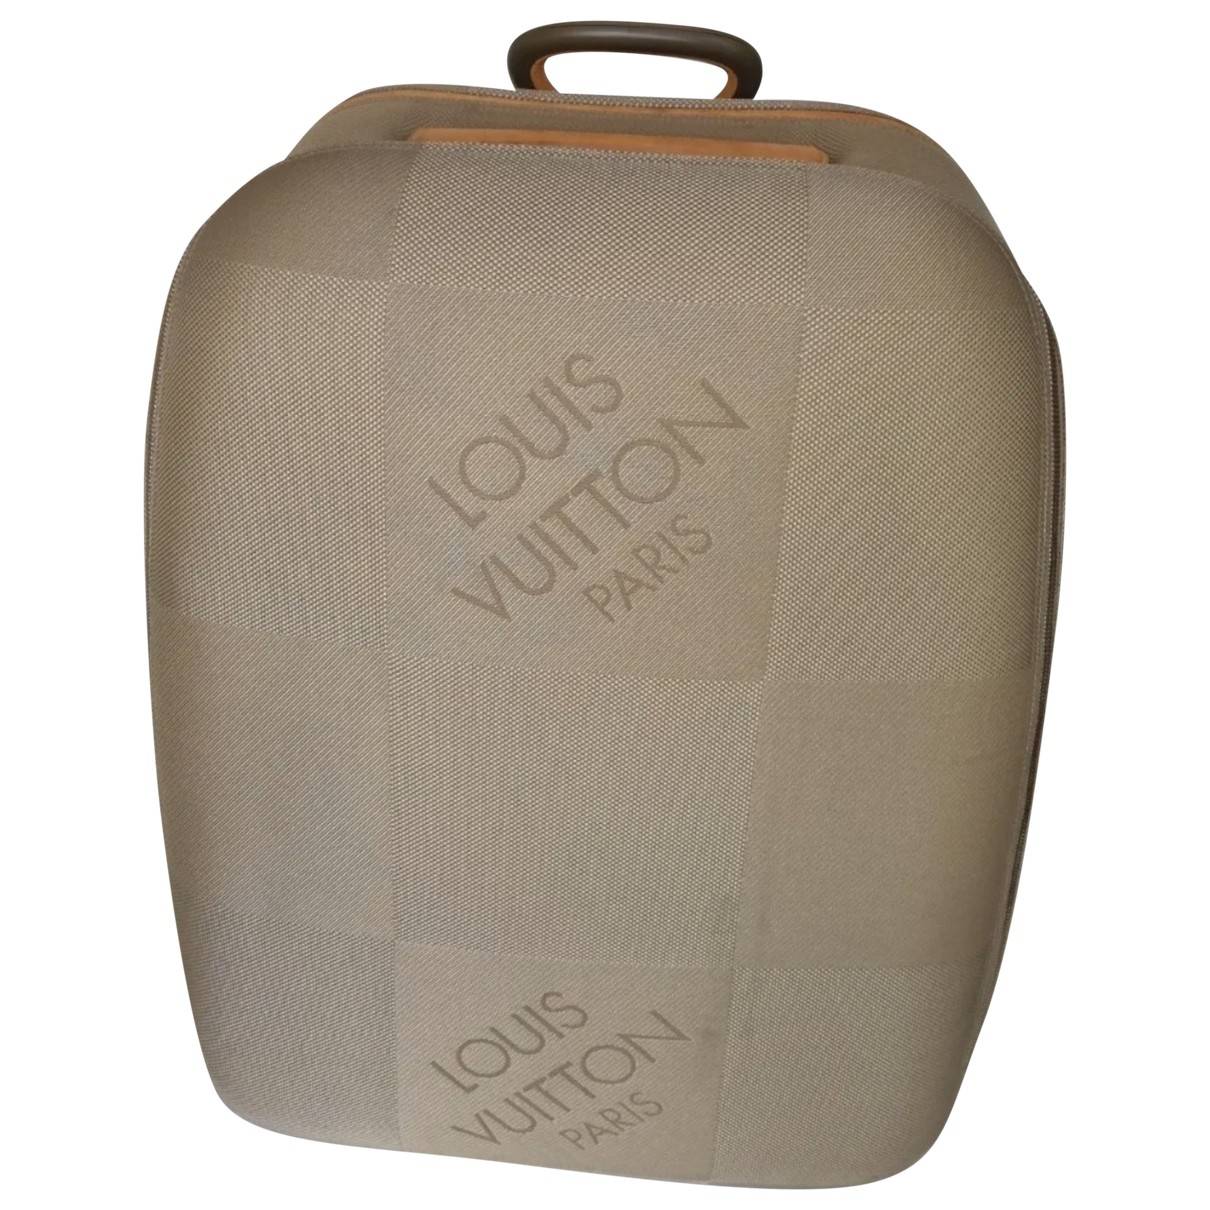 Terre damier geant messenger cloth travel bag Louis Vuitton Grey